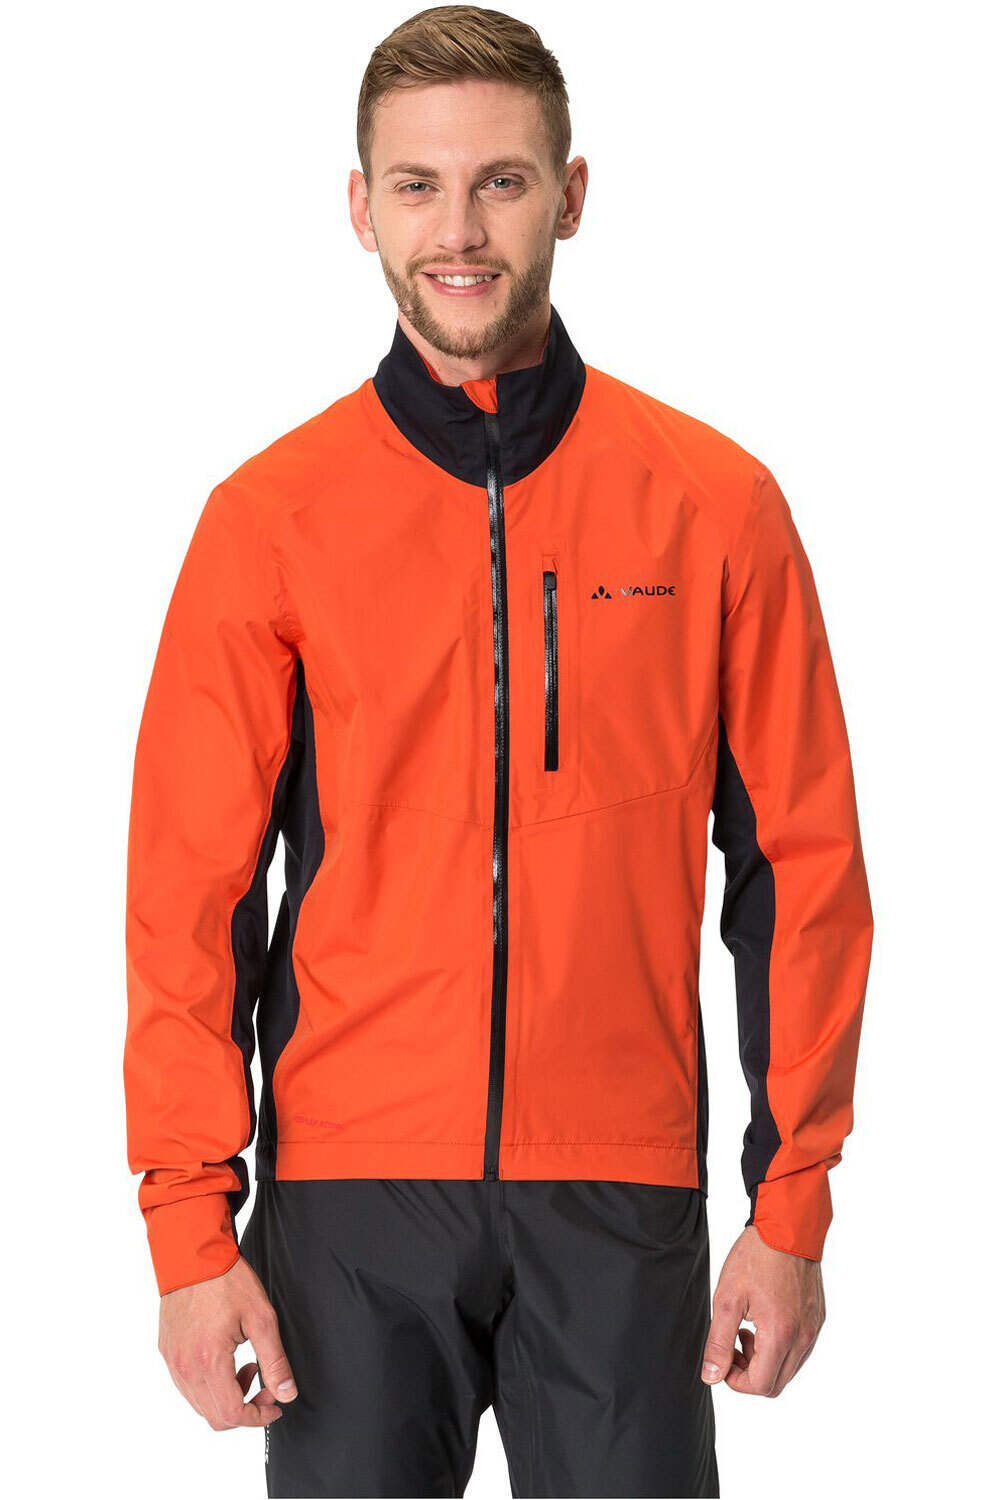 Vaude chaqueta impermeable ciclismo hombre Men's Kuro Rain Jacket vista frontal